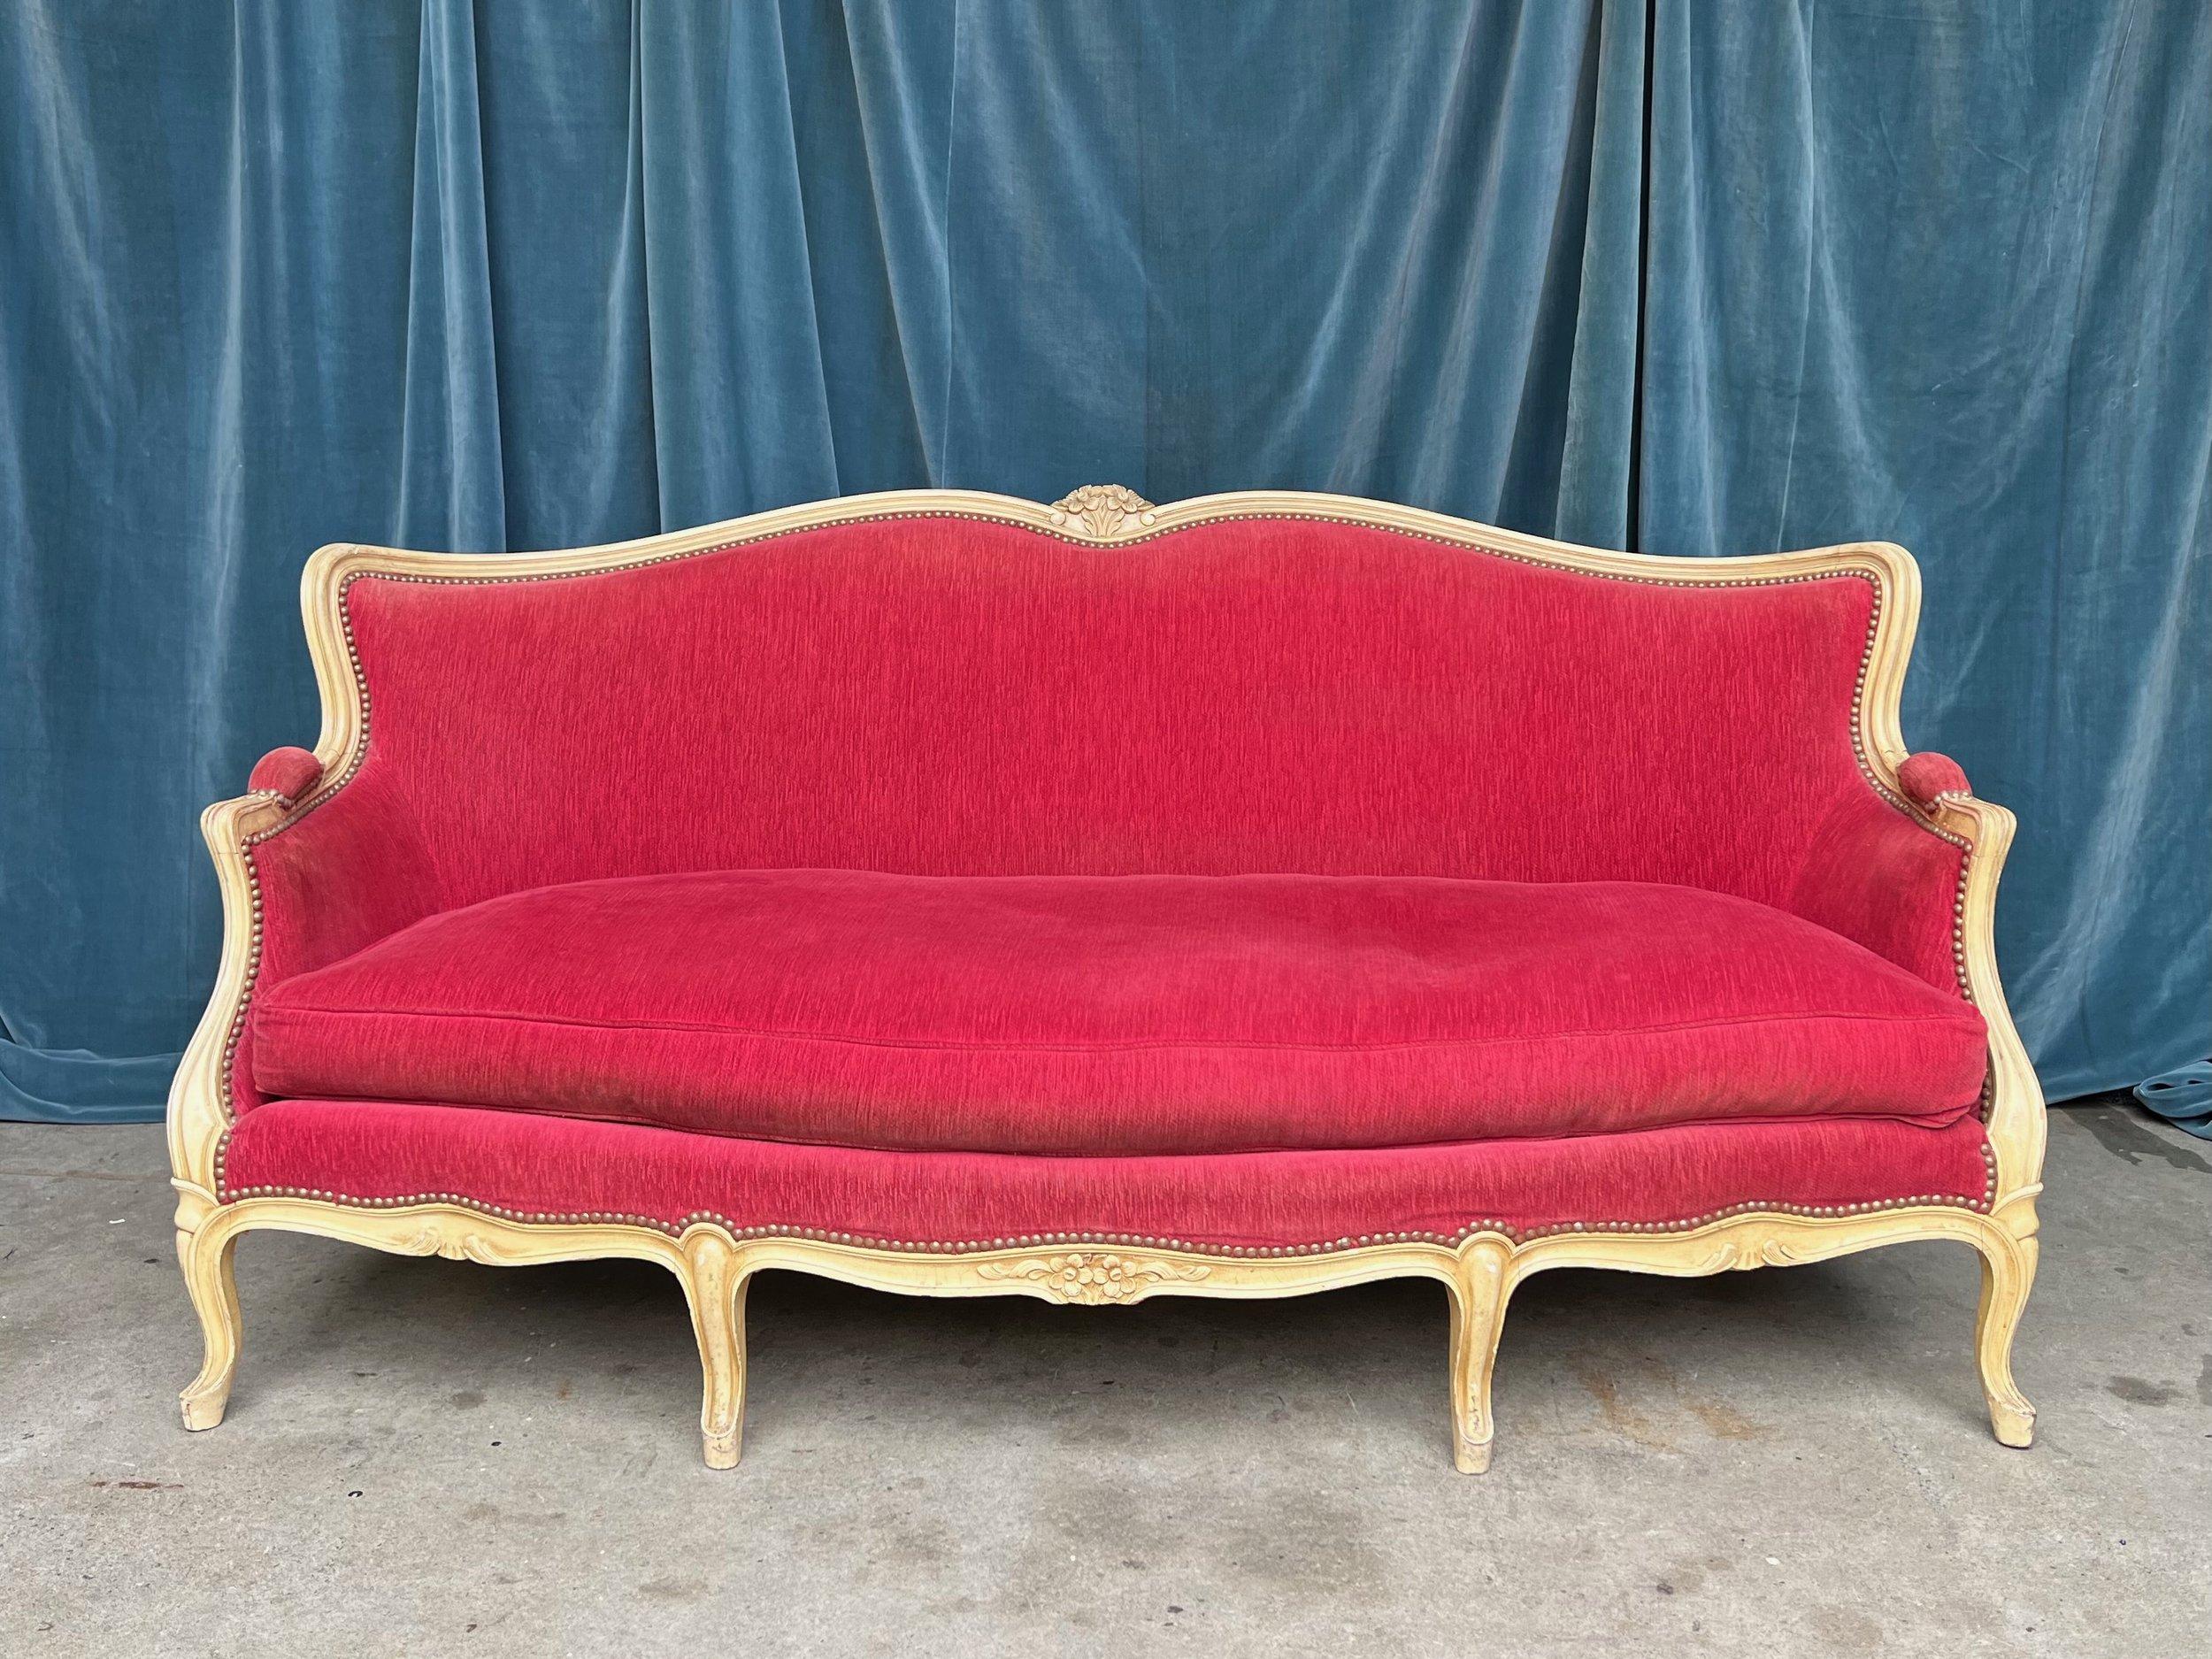 Superbe canapé français de style Louis XV des années 1920, recouvert d'une riche tapisserie en velours rouge et d'un cadre en bois peint de couleur crème. Les têtes de clous en laiton ajoutent une touche supplémentaire de sophistication et de